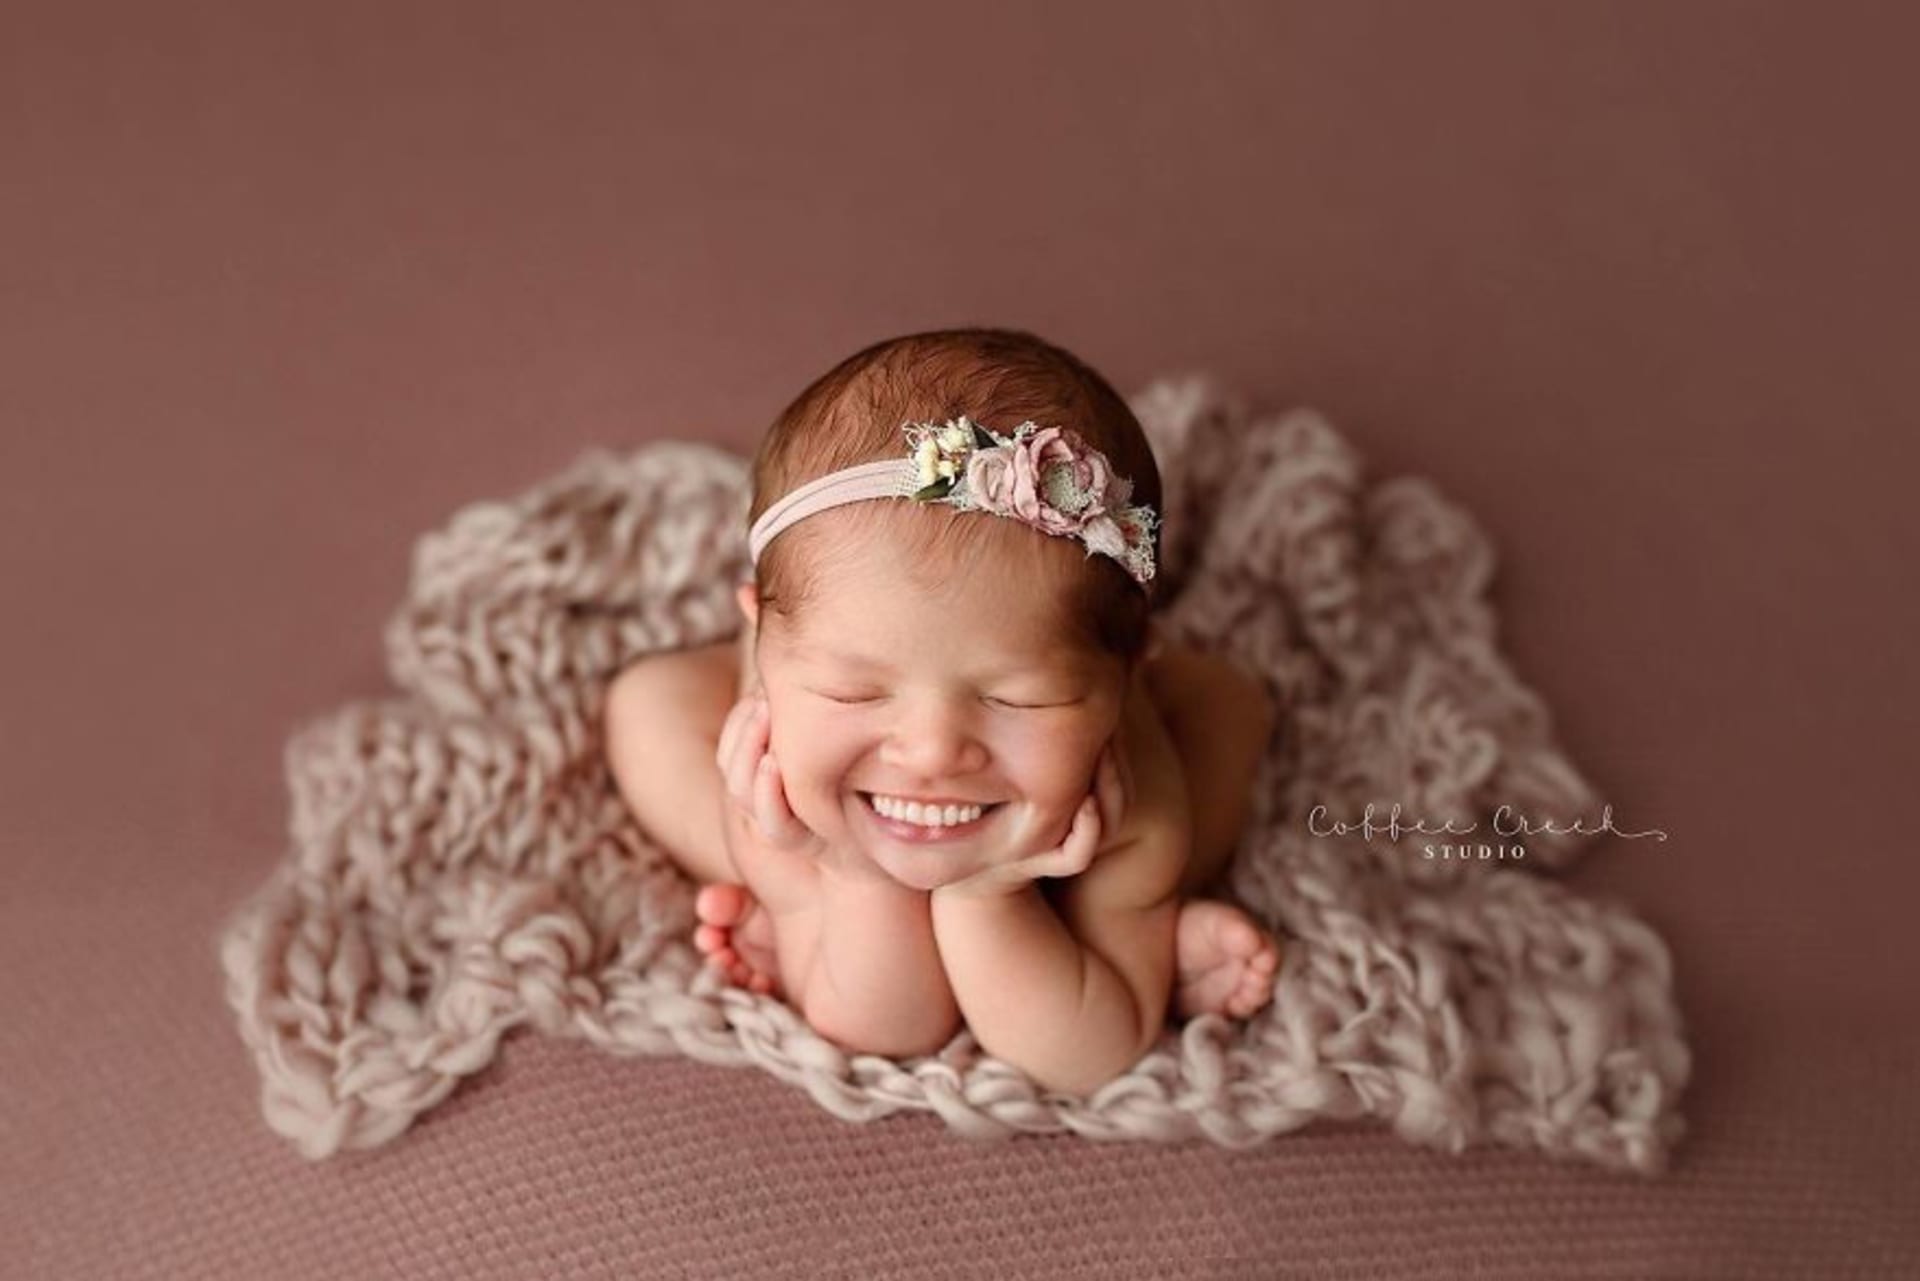 Fotky novorozenců se zuby děsí celý internet 10